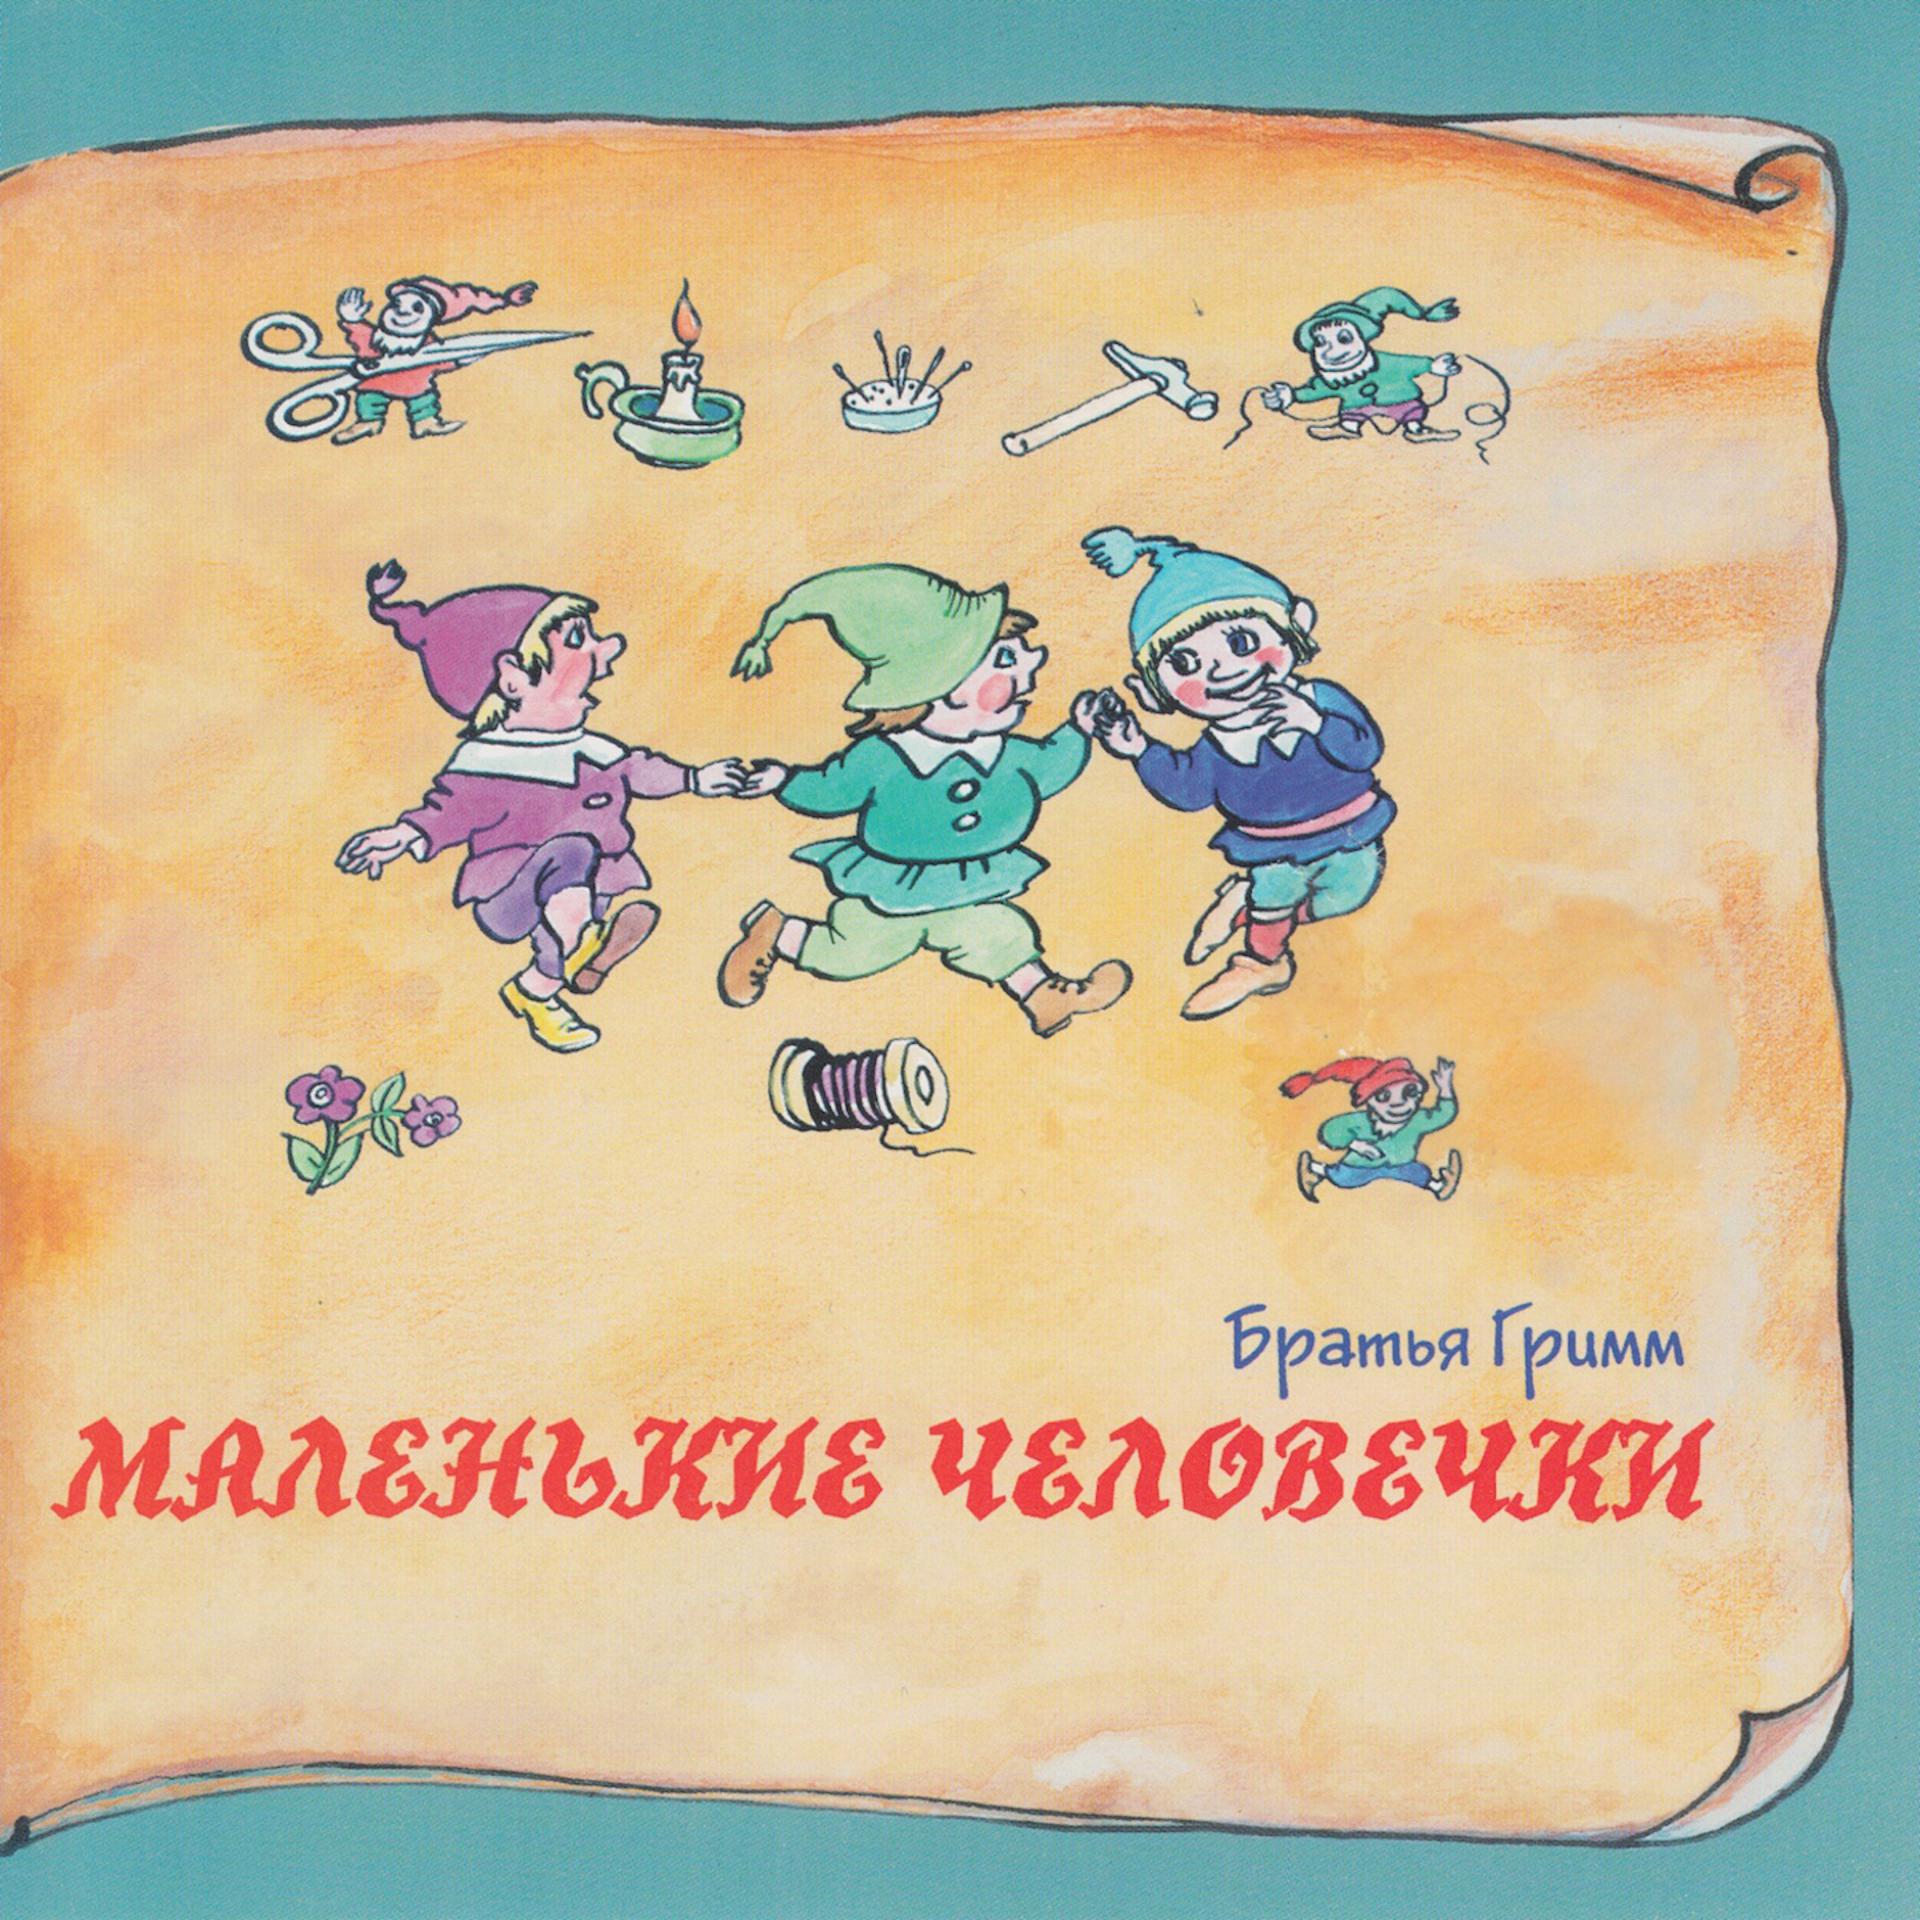 Постер к треку Татьяна Родионова - Веретено, ткацкий челнок и иголка